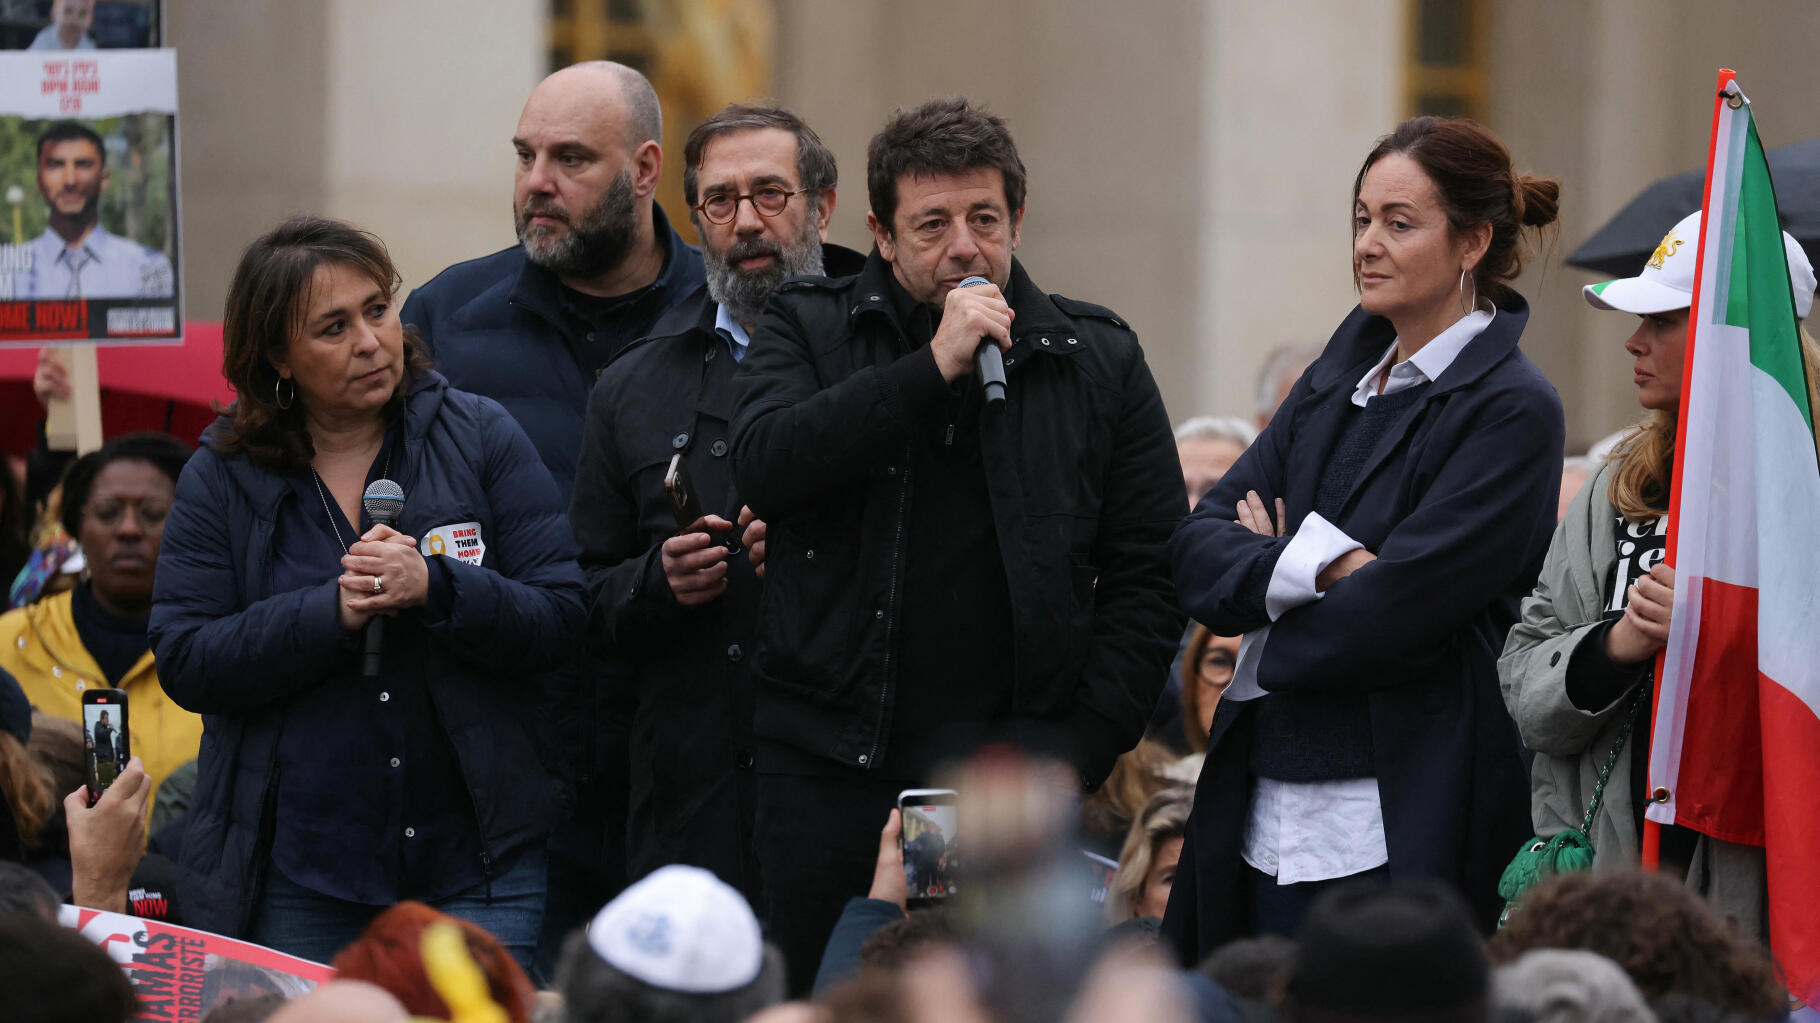 Patrick Bruel i Enrico Macias na paryskiej demonstracji domagającej się uwolnienia zakładników